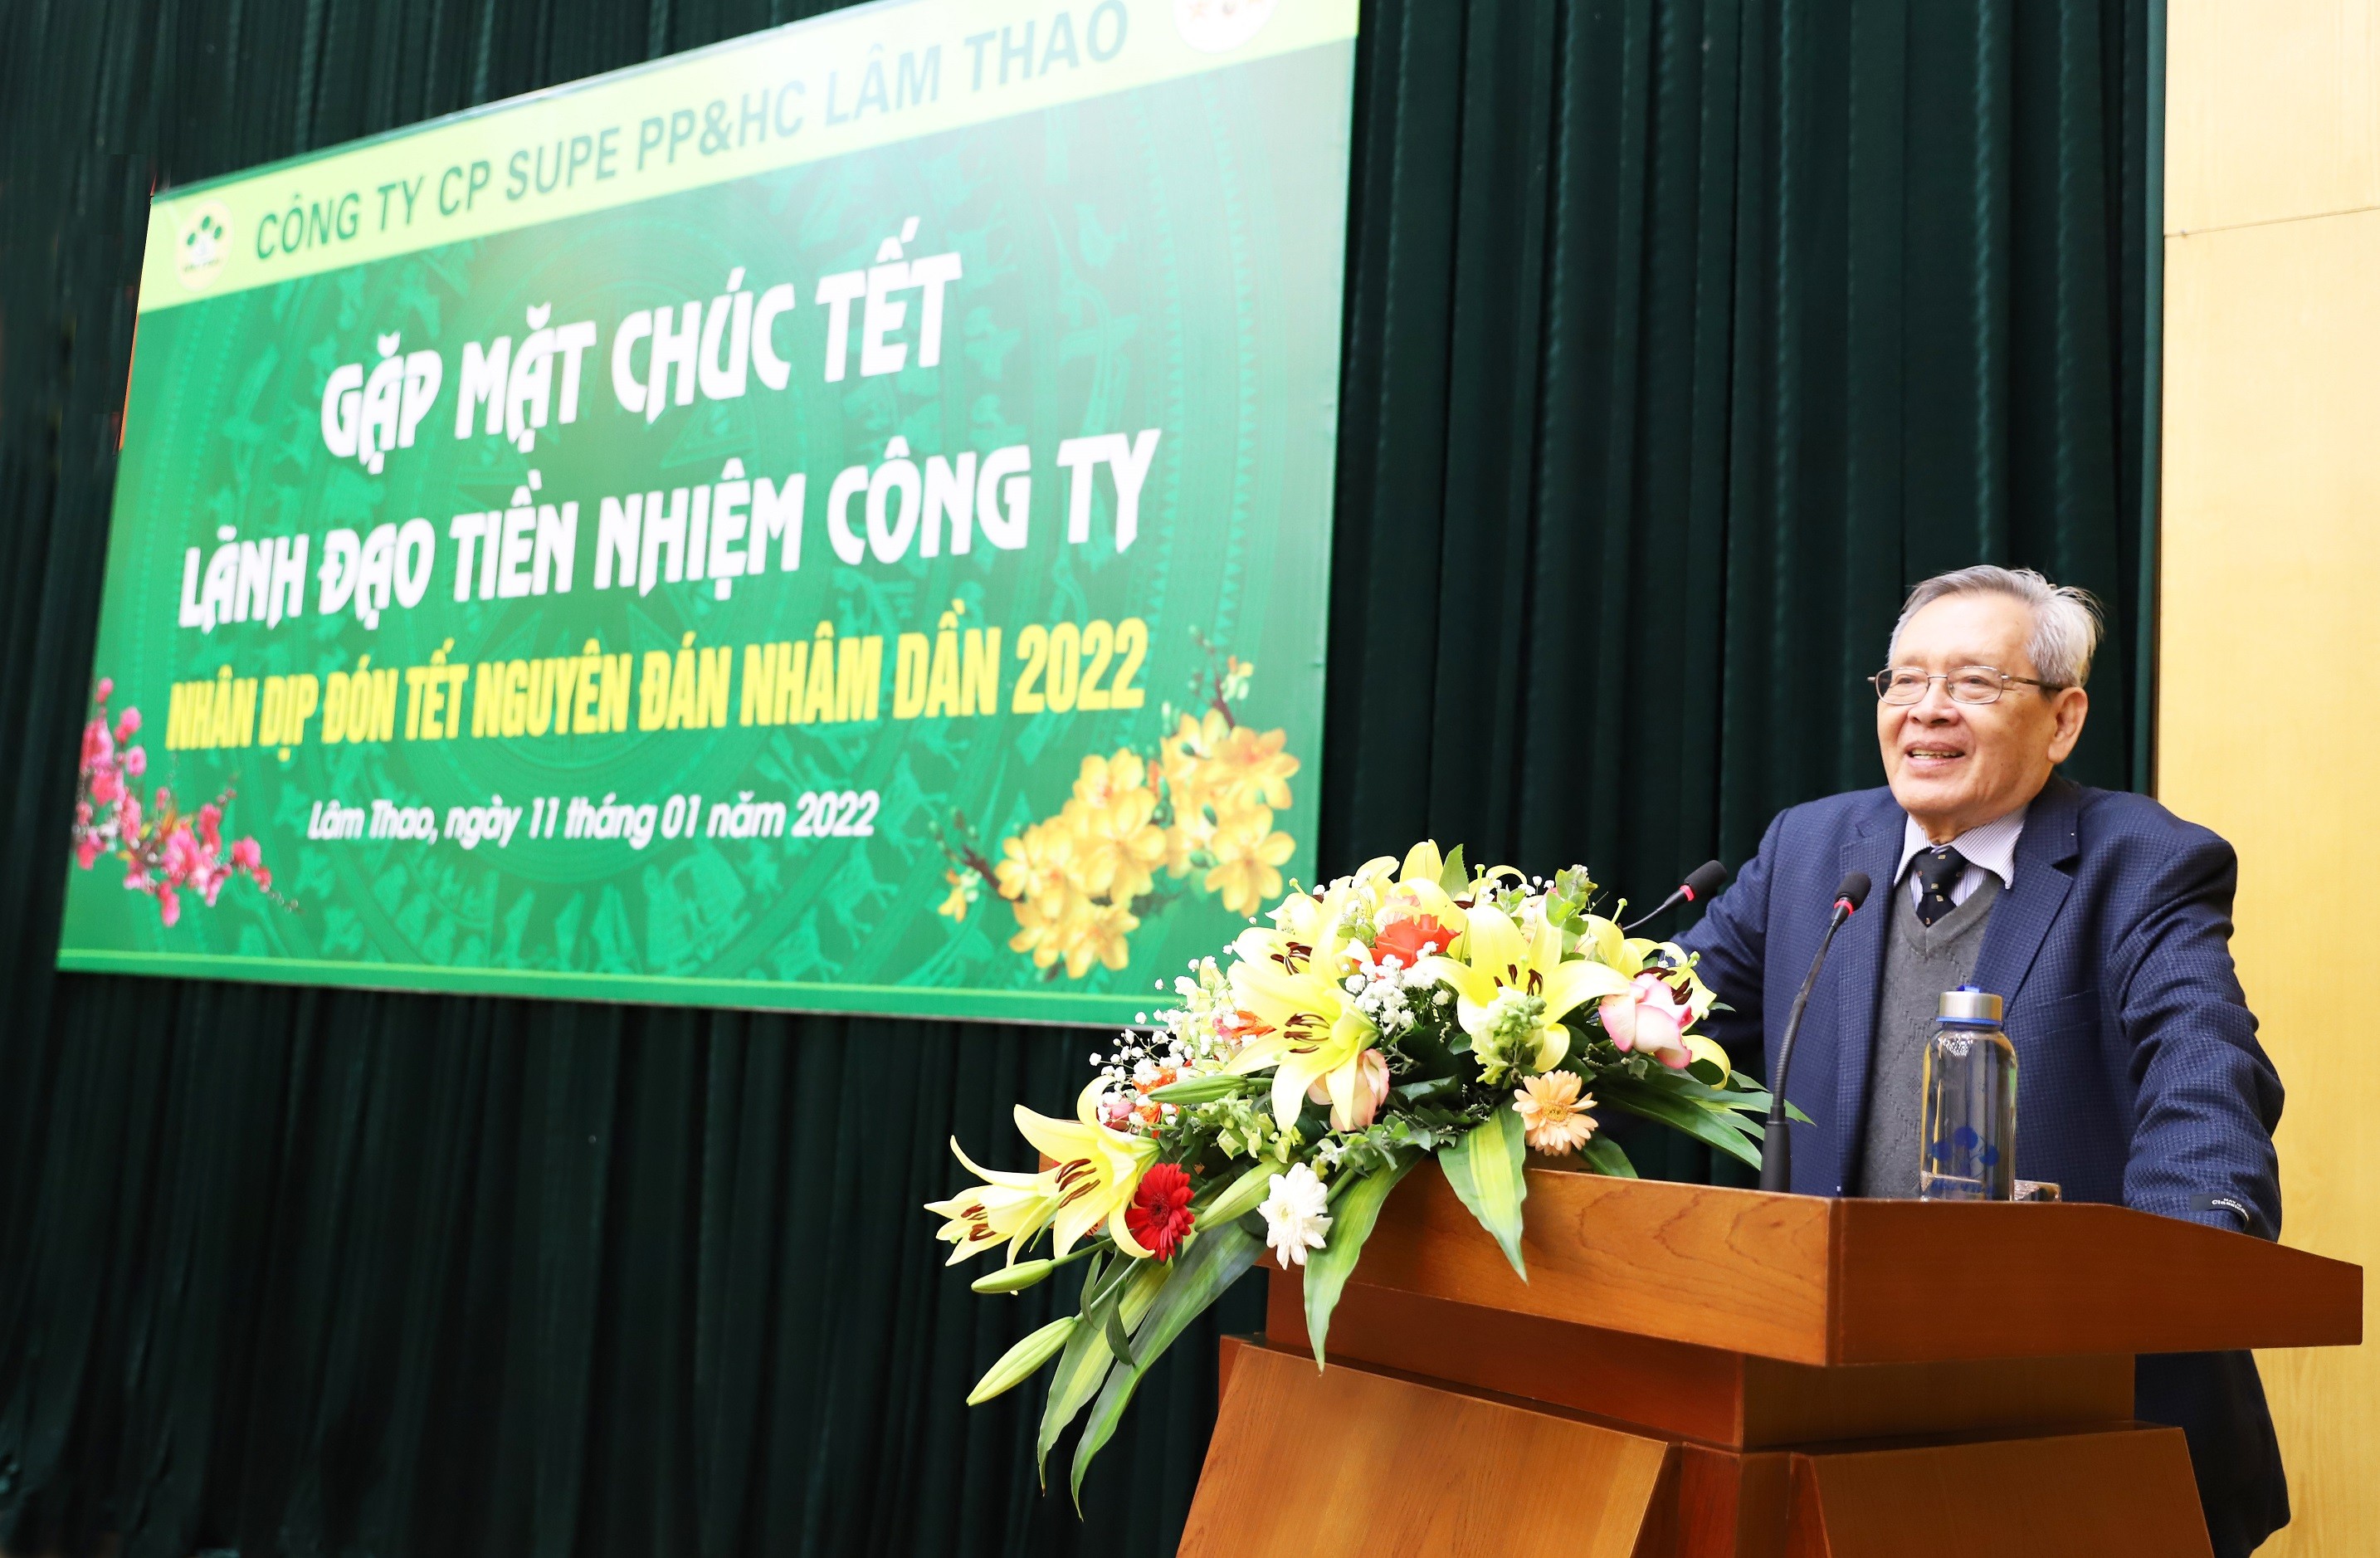 Công ty CP Supe PP & HC Lâm Thao gặp mặt lãnh đạo tiền nhiệm nhân dịp Tết Nguyên đán Nhâm dần 2022